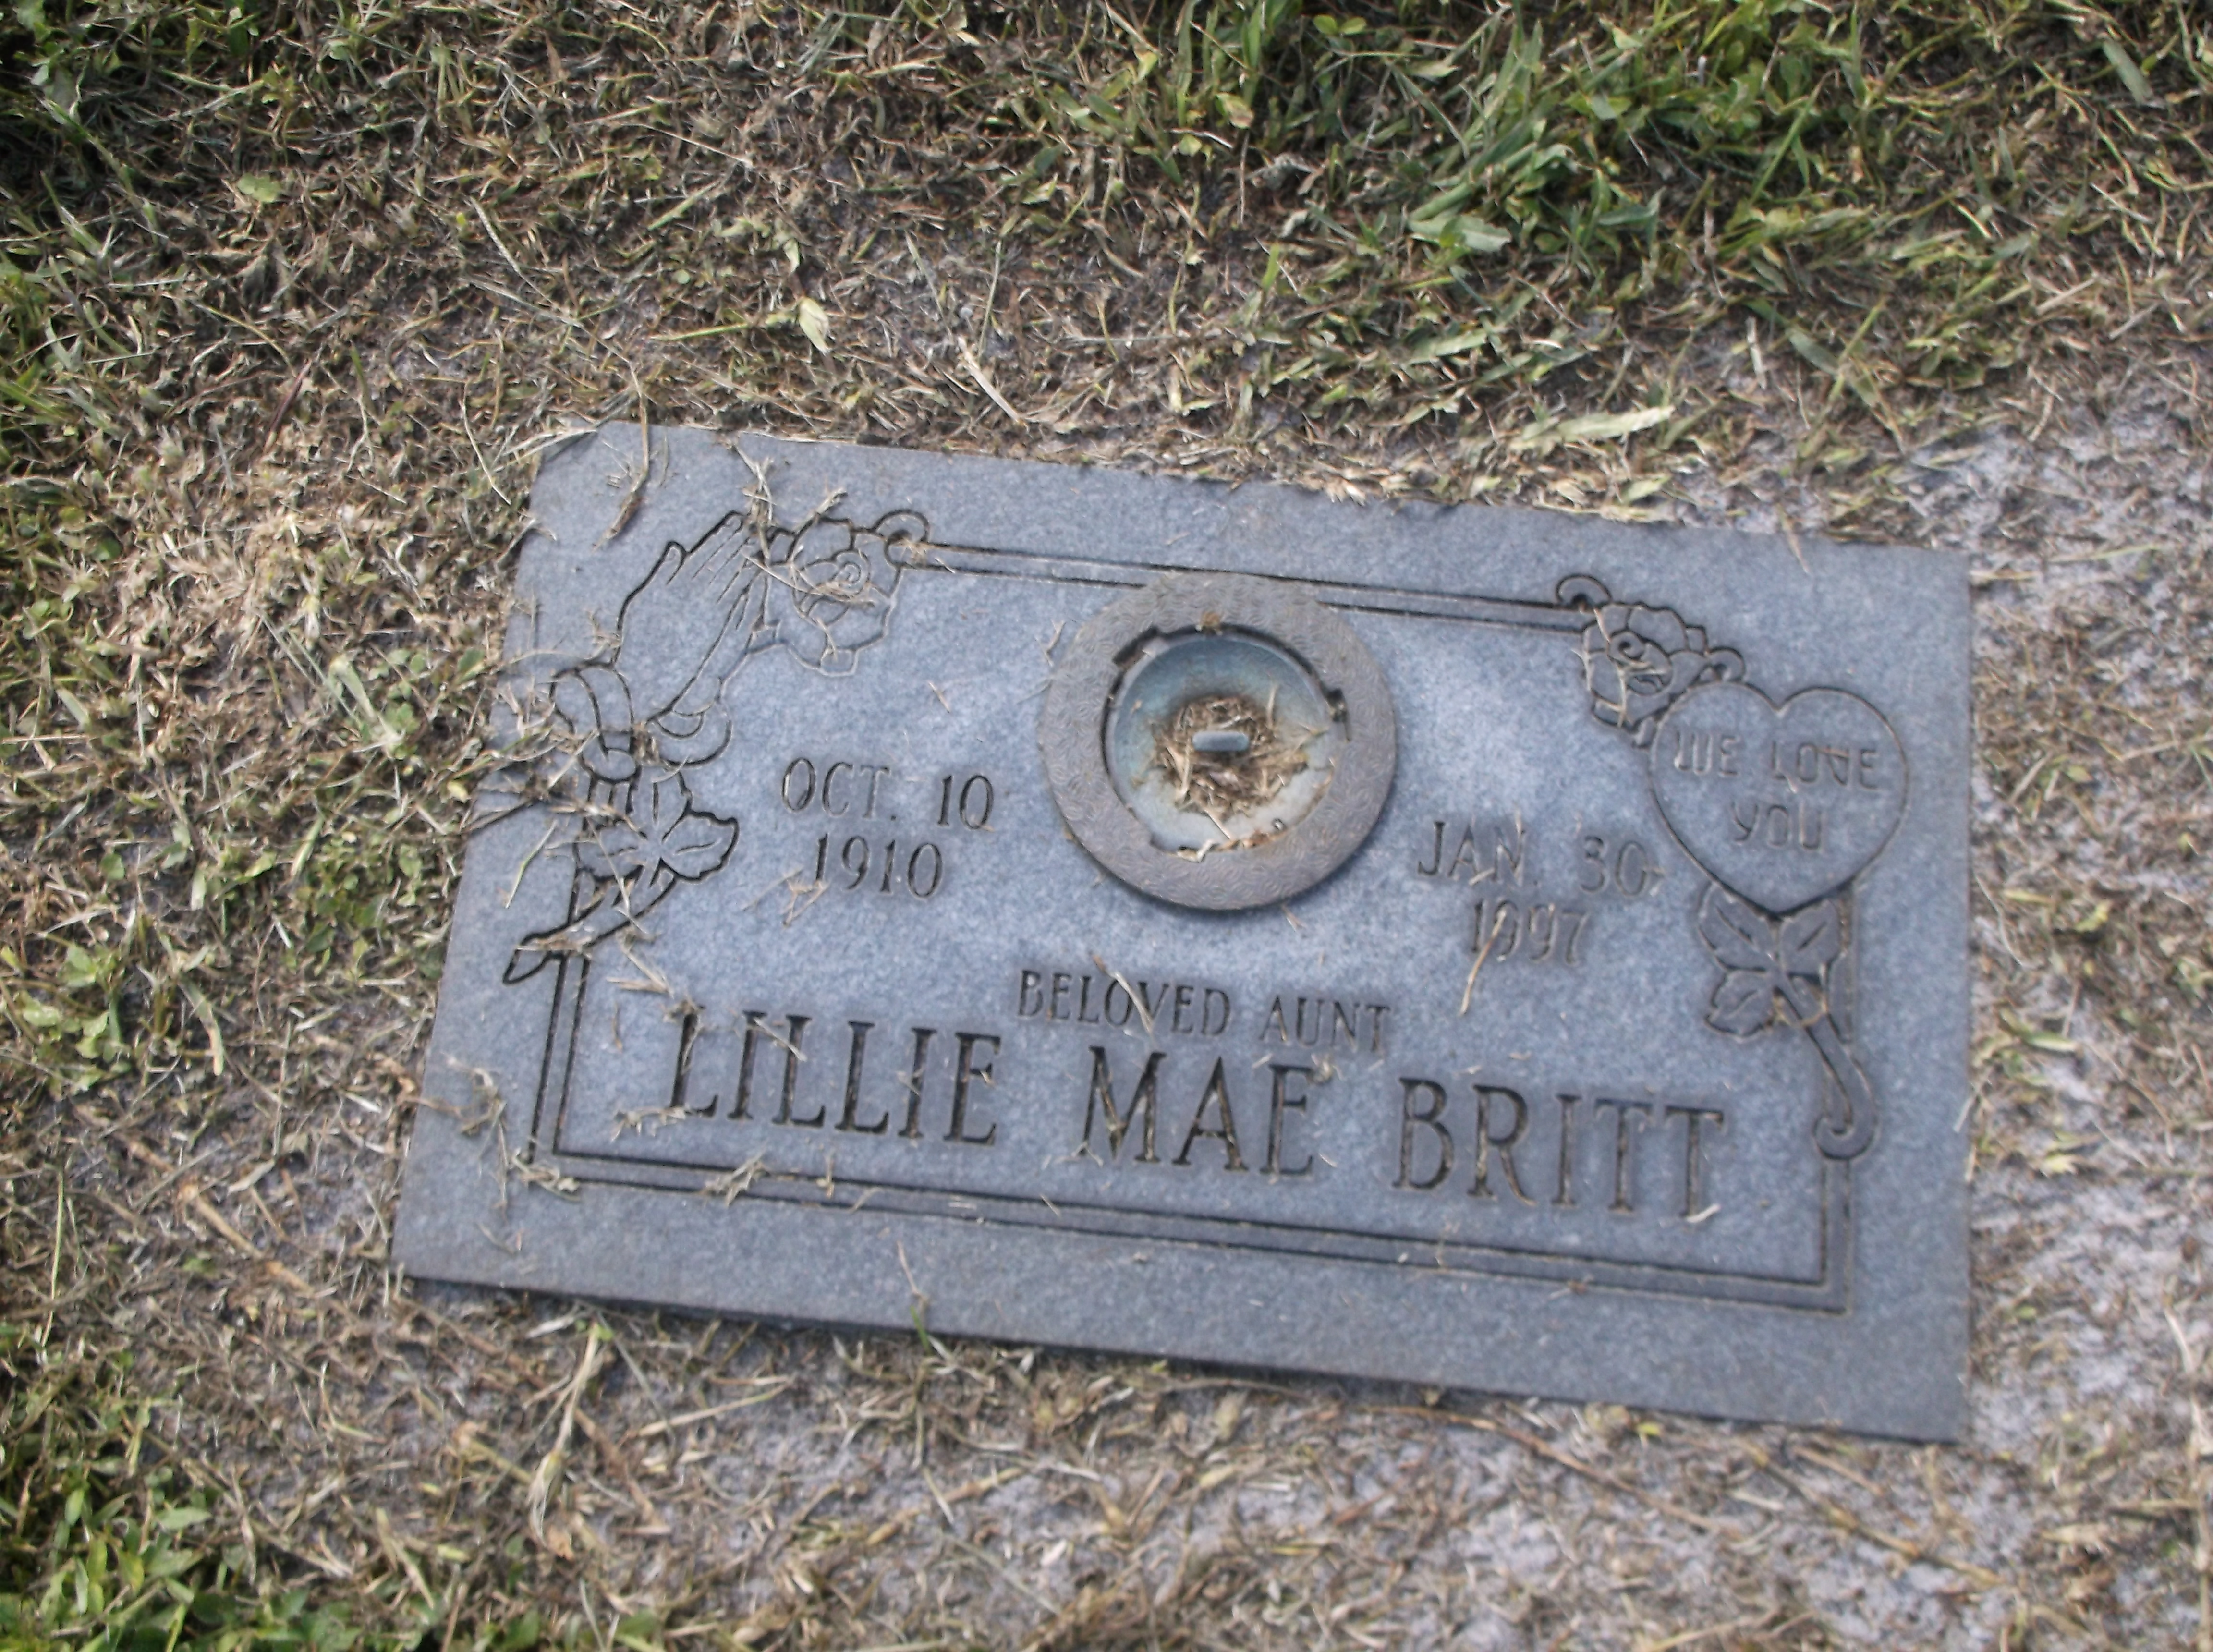 Lillie Mae Britt